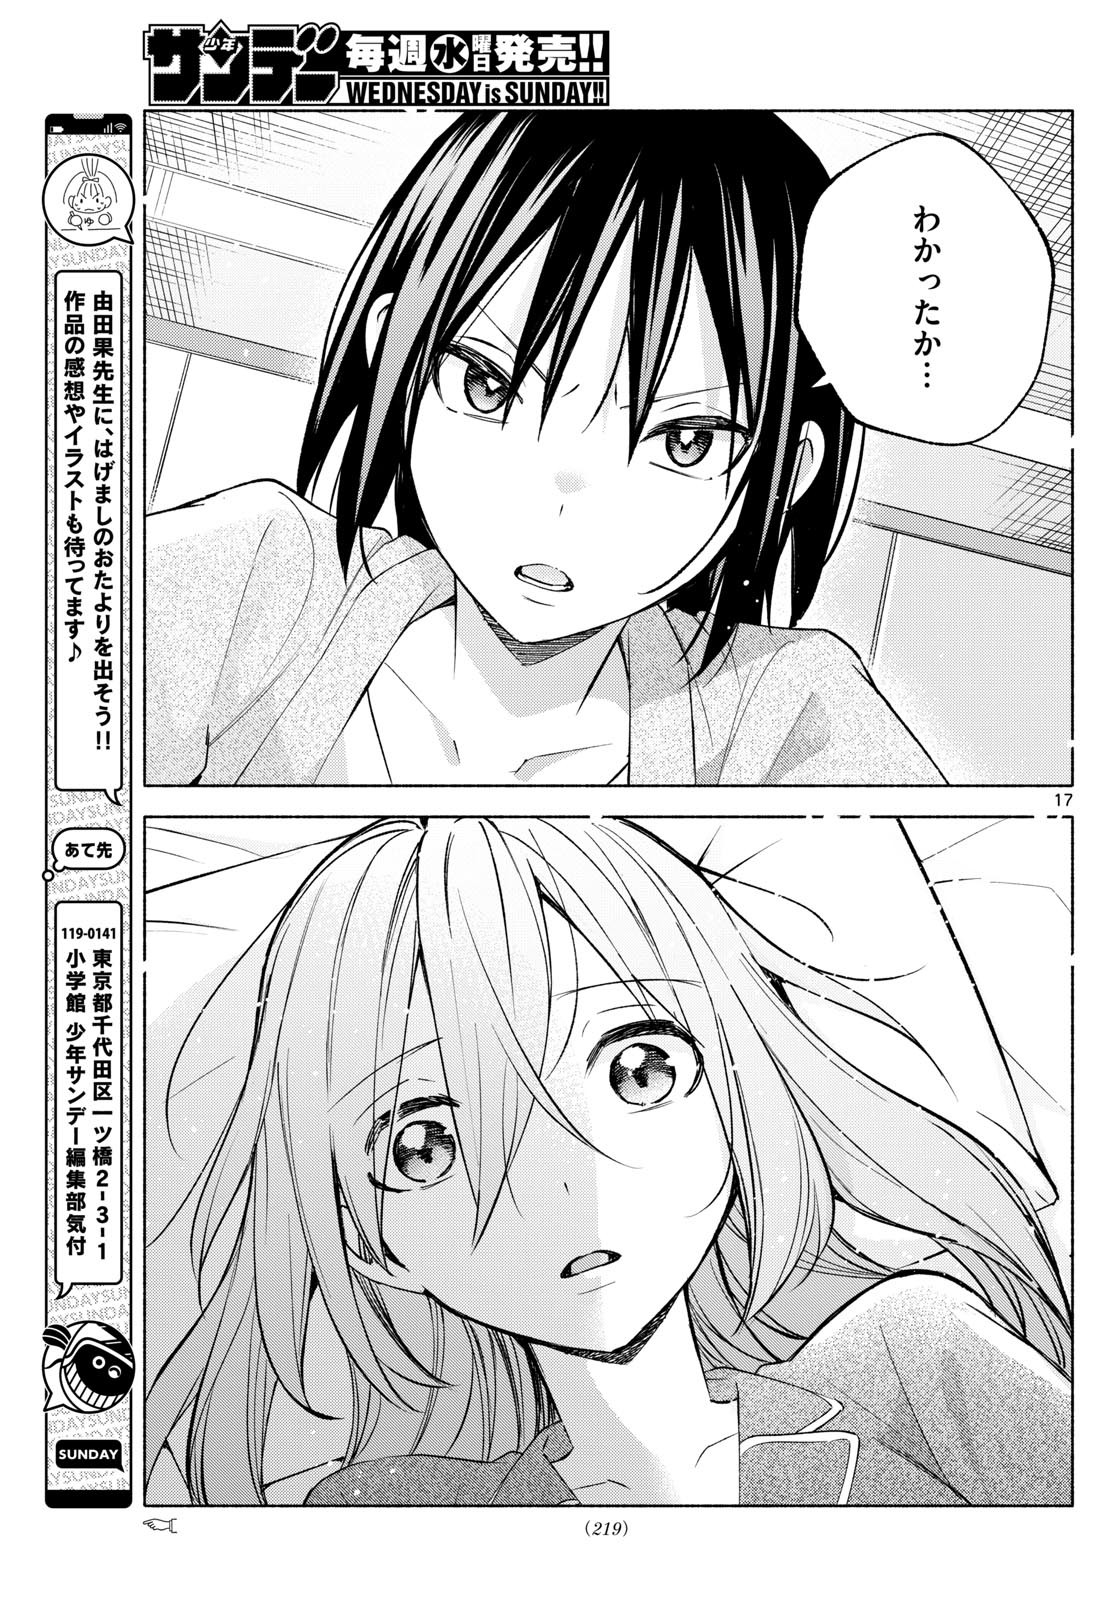 Kimi to Warui Koto ga Shitai - Chapter 033 - Page 17